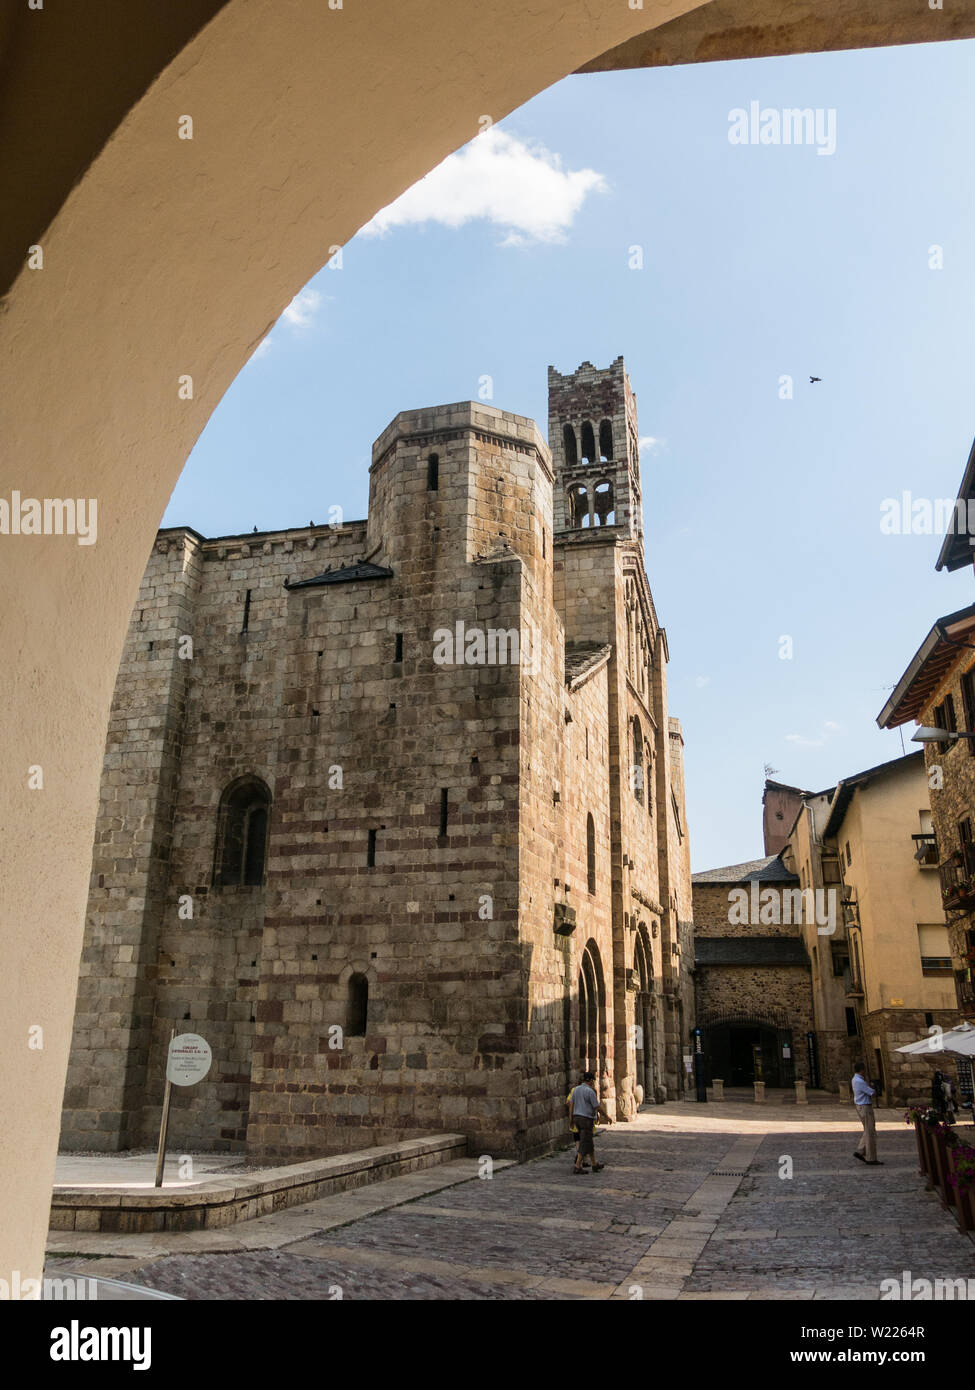 Seo de Urgell, Espagne - 11 août 2018 : la cathédrale de Santa María de Urgel est de style roman dans le style et date du 12ème siècle. Seo de Urgel. Banque D'Images